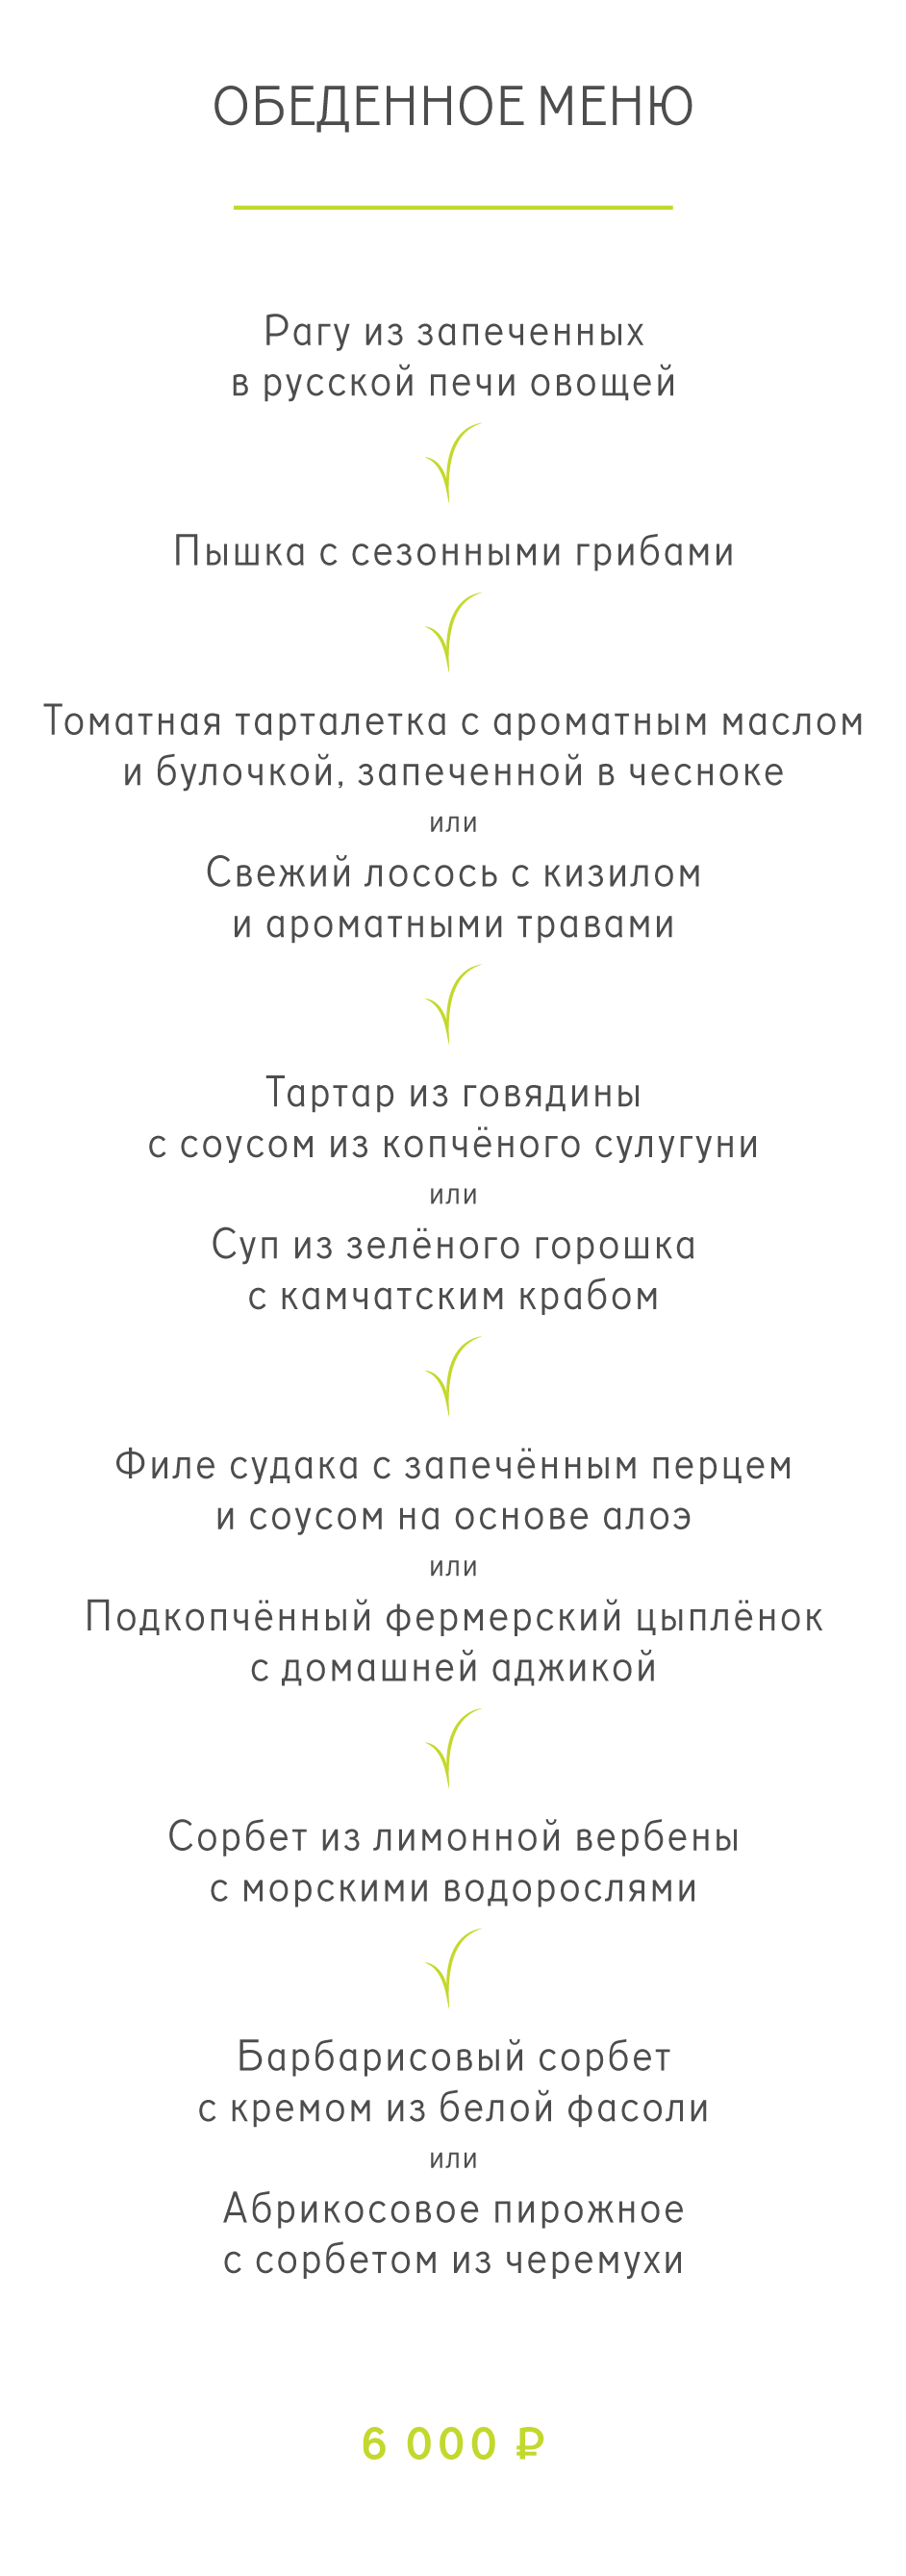 Обеденное меню московского ресторана Twins Garden, который в 2021 году получил две звезды